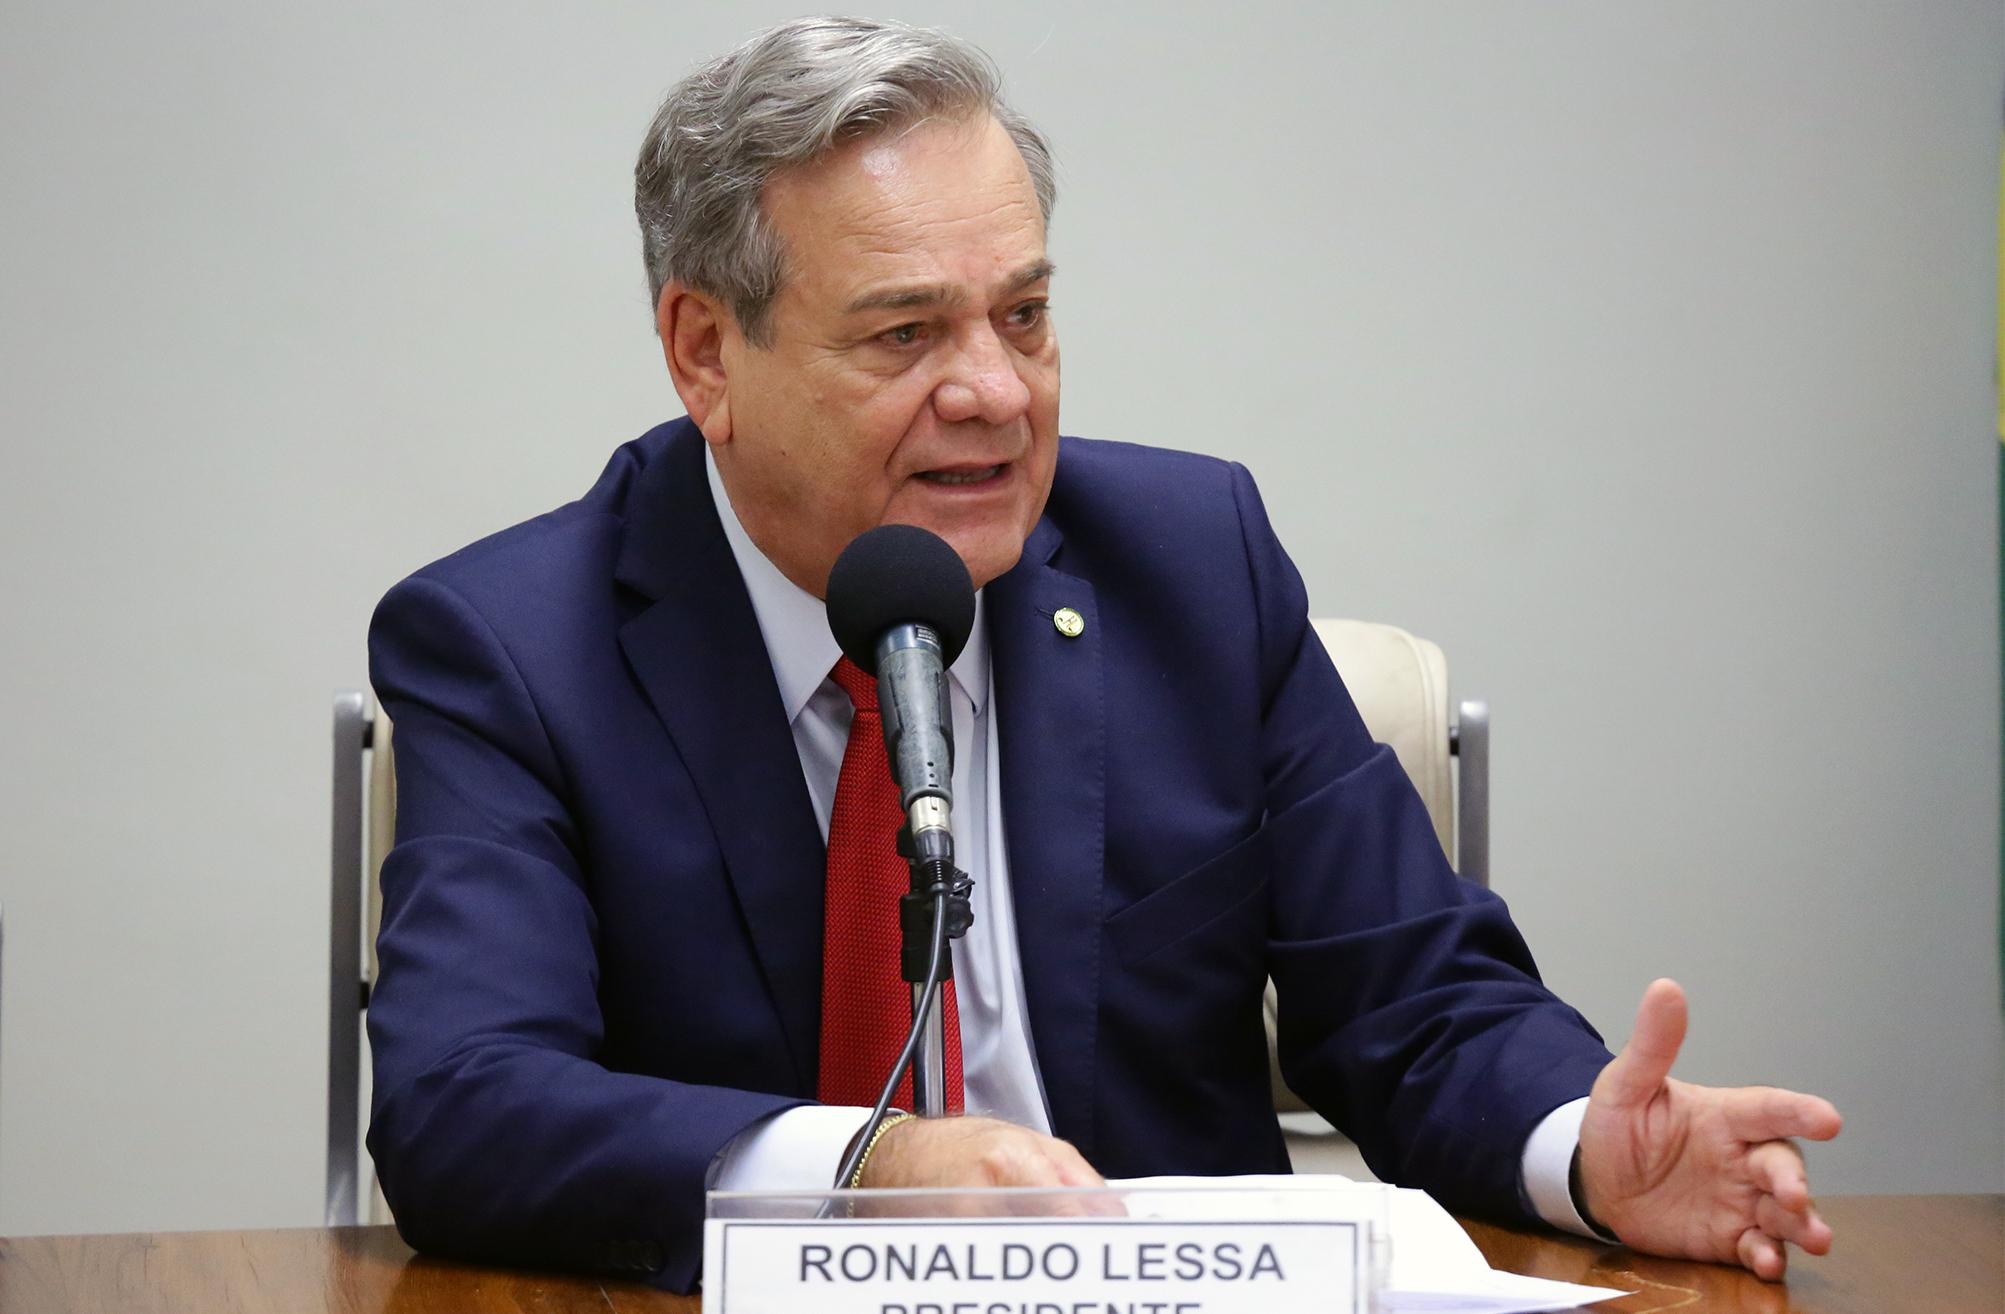 Ronaldo Lessa cancela entrevista em apoio a jornalistas